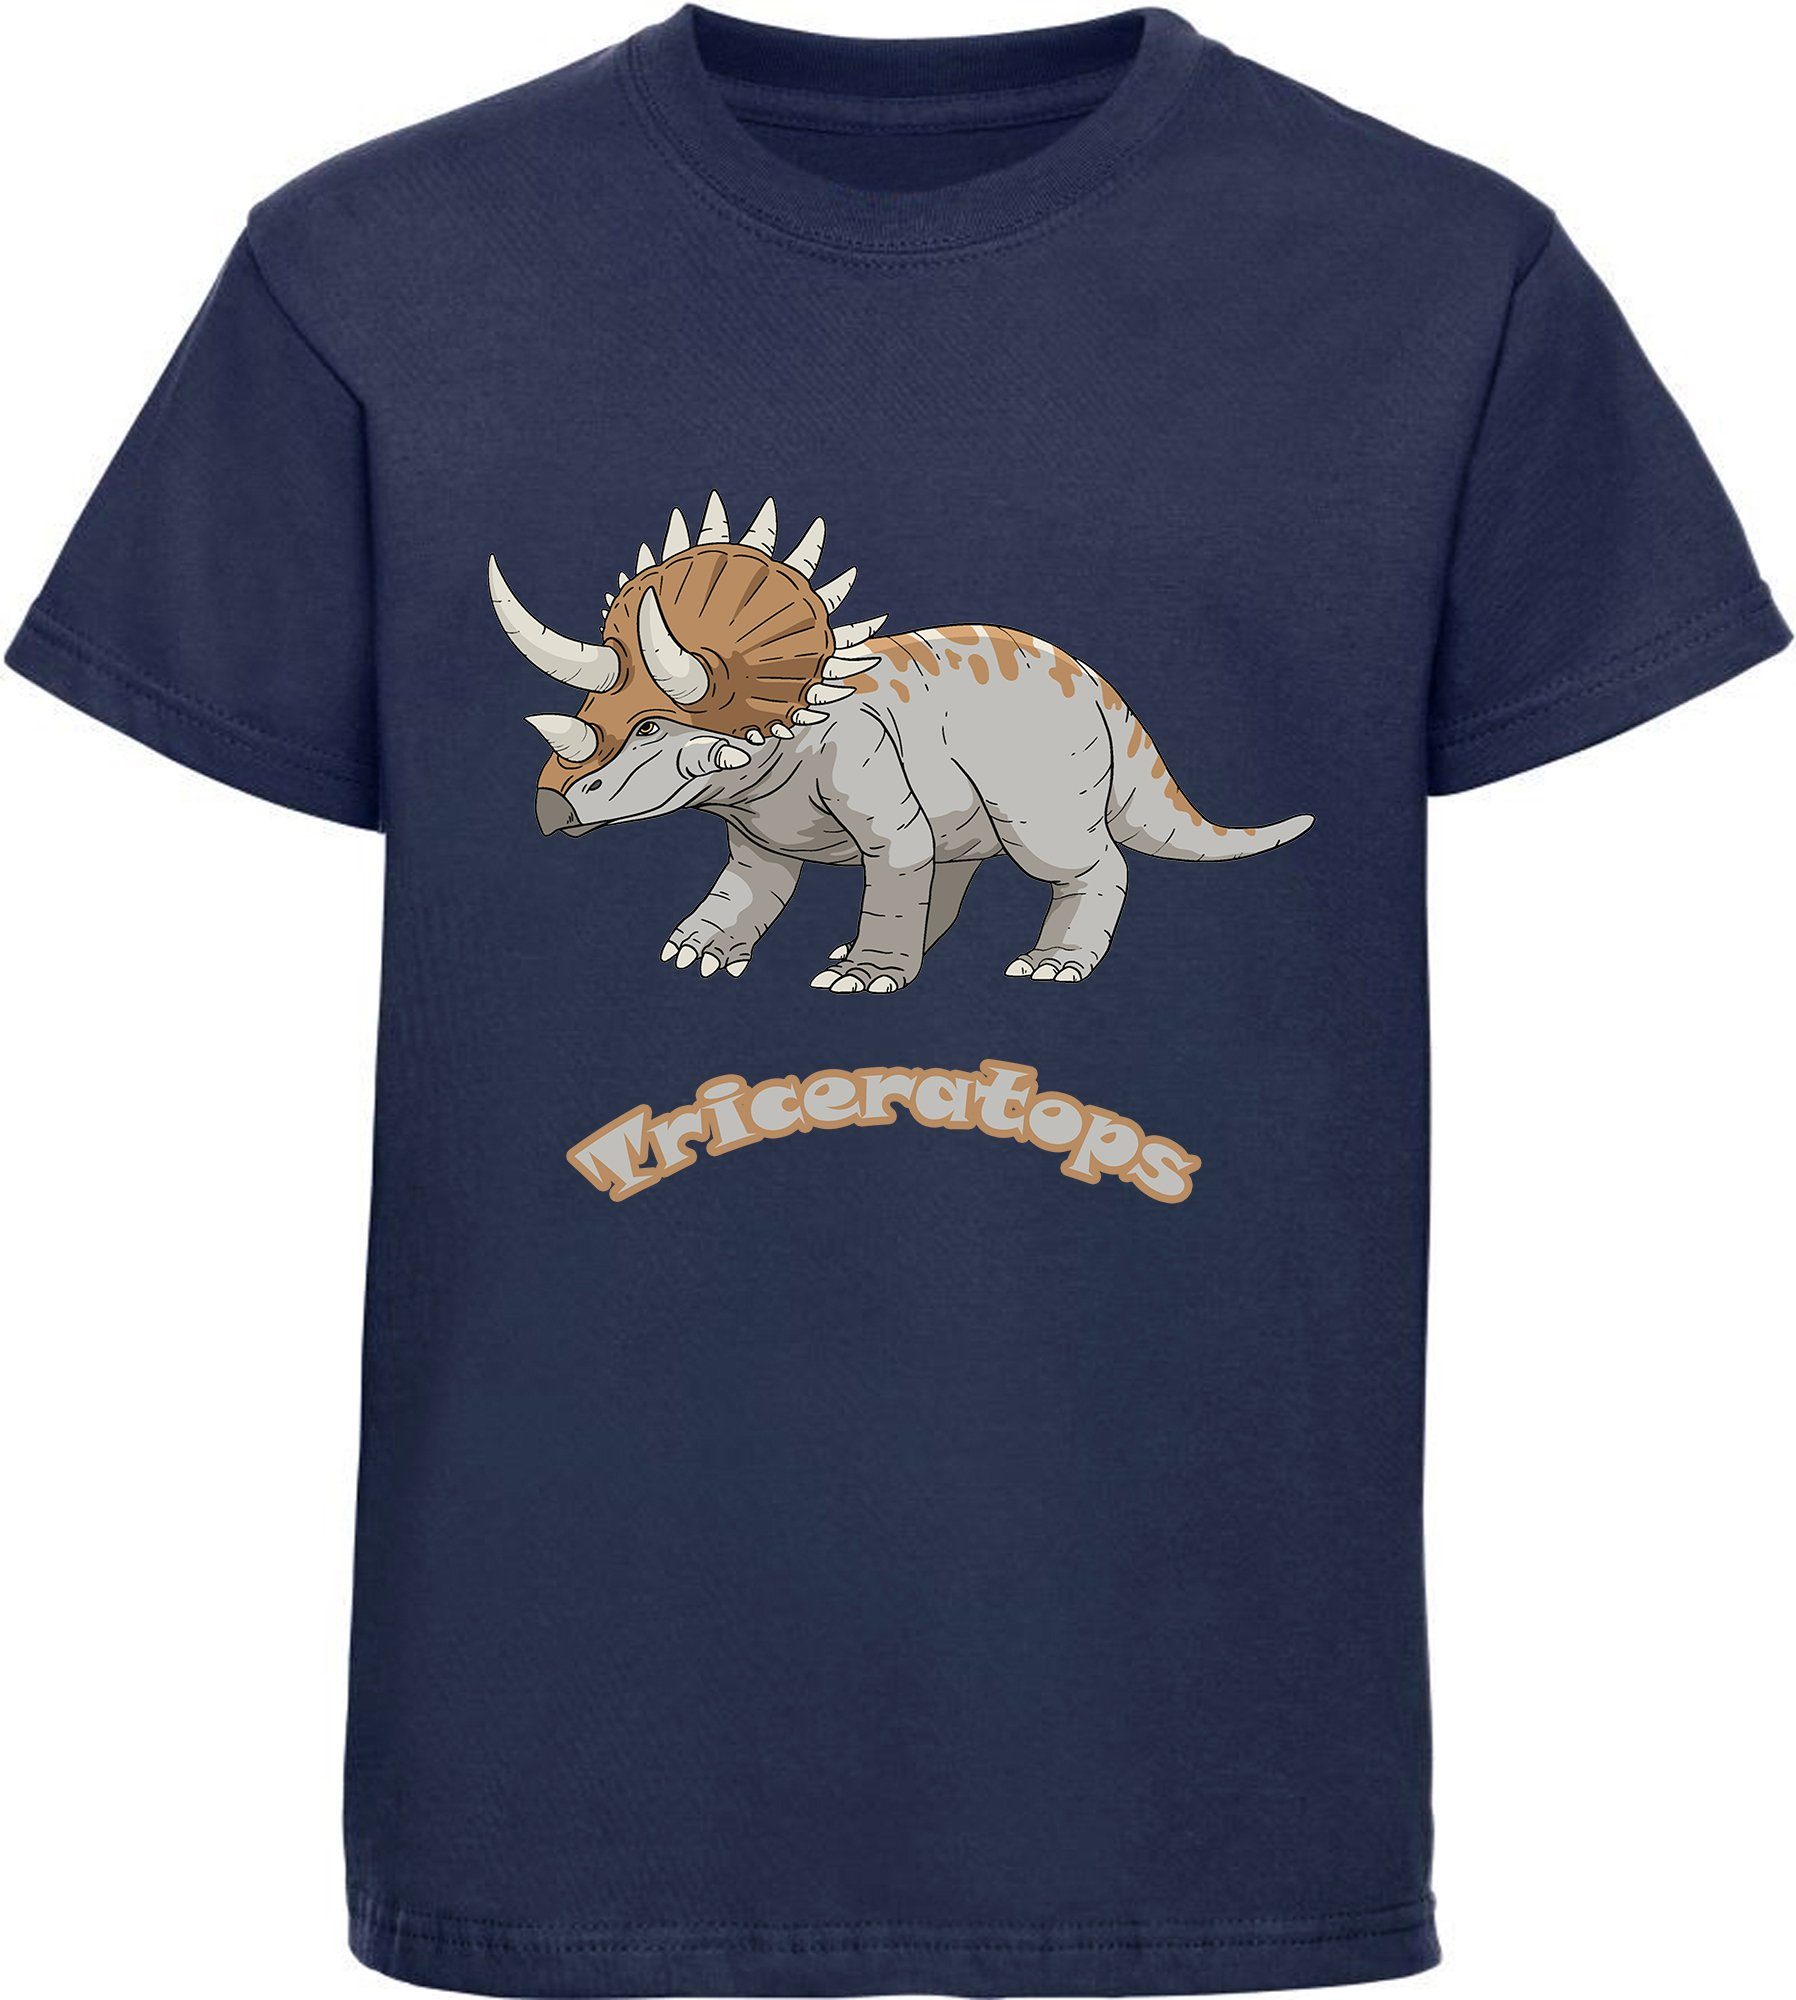 MyDesign24 T-Shirt bedrucktes Kinder T-Shirt mit Triceratops 100% Baumwolle mit Dino Aufdruck, navy blau i52 | T-Shirts